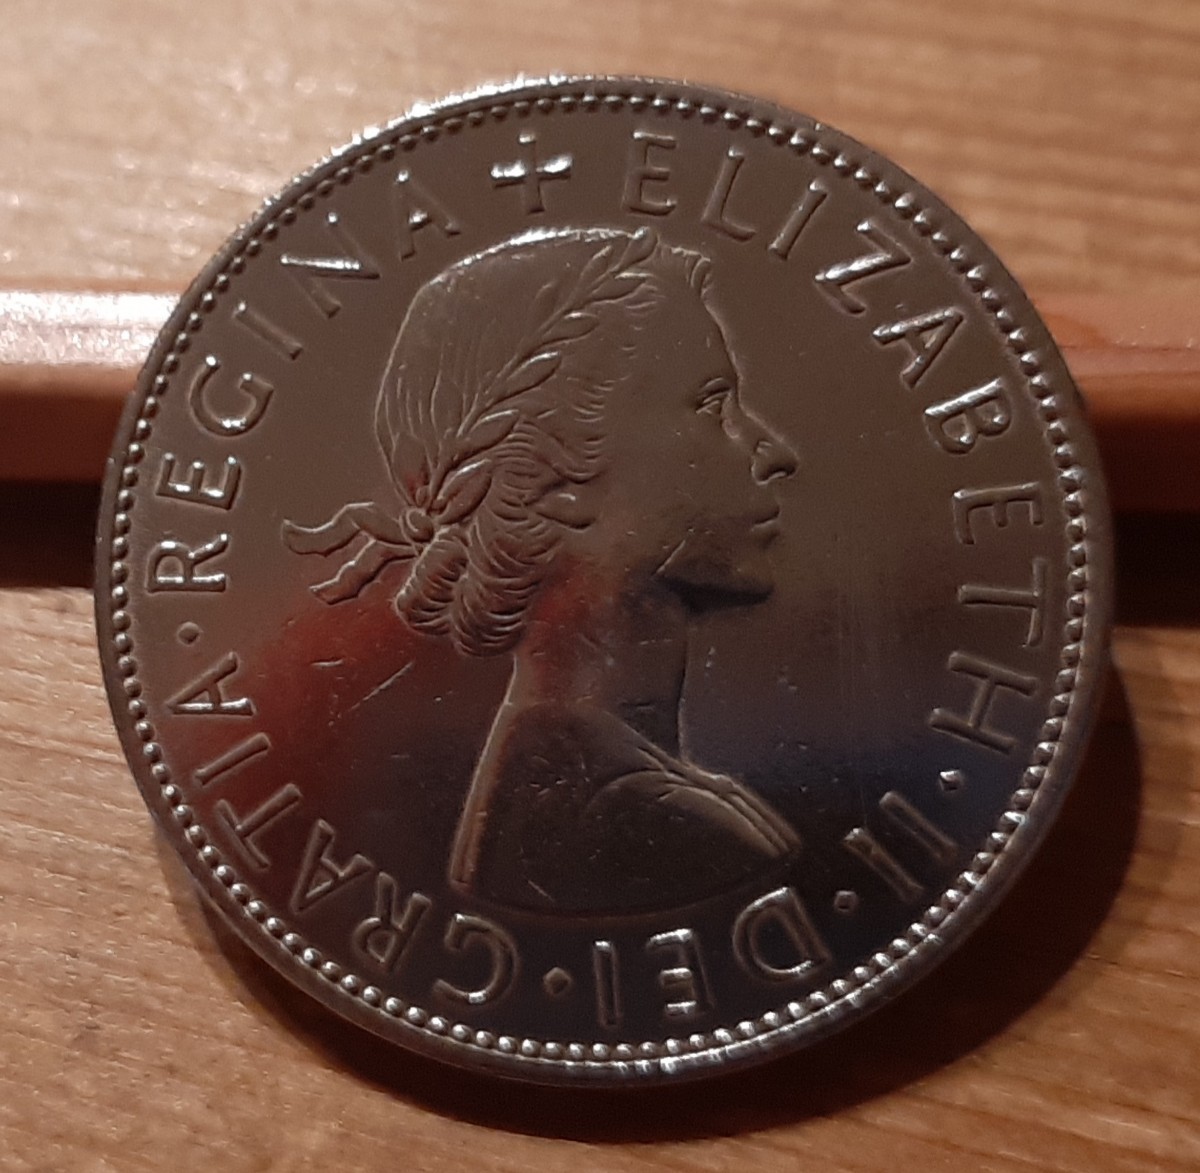 英国 イギリス 1967年 昭和42年 古銭 ハーフクラウン 14g 32ミリ美品よろしくお願いします#ペニー#pence#ラッキーアイテムの画像2